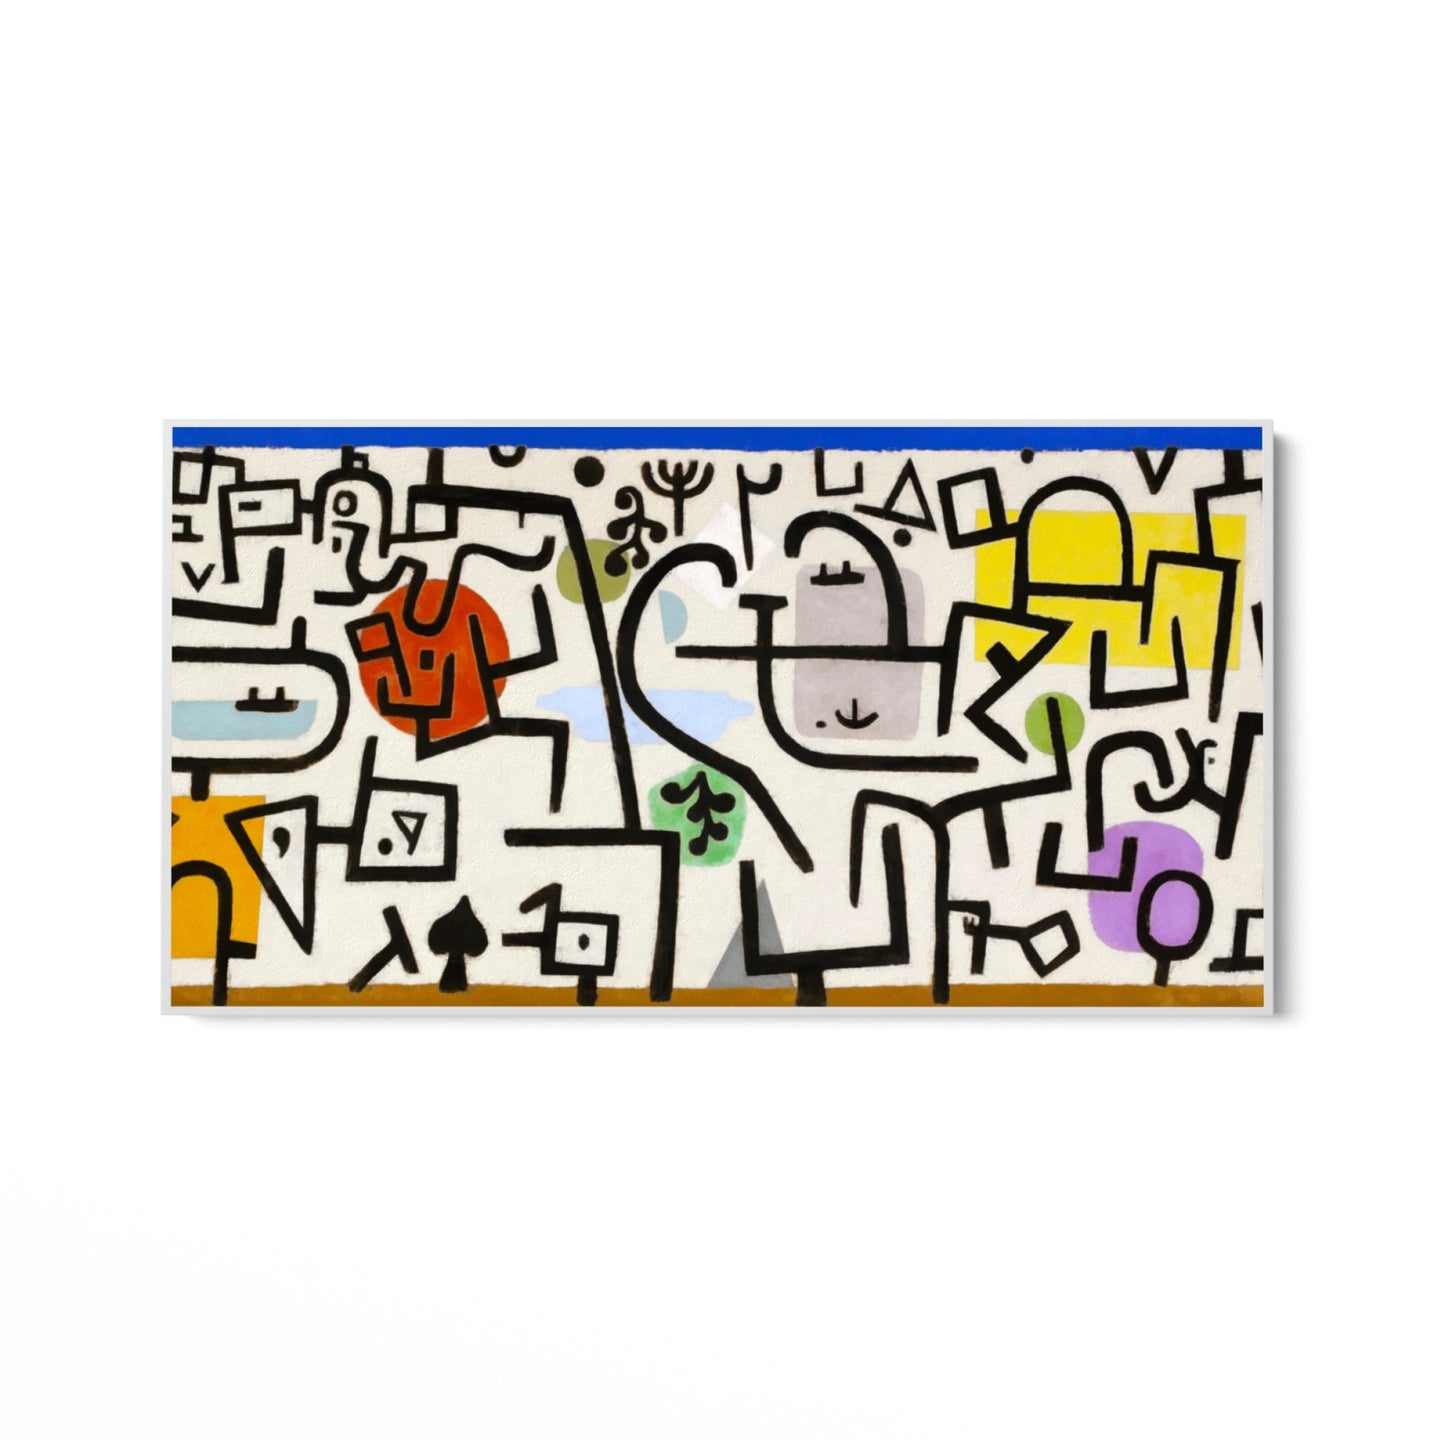 Paul Klee, Port Riche